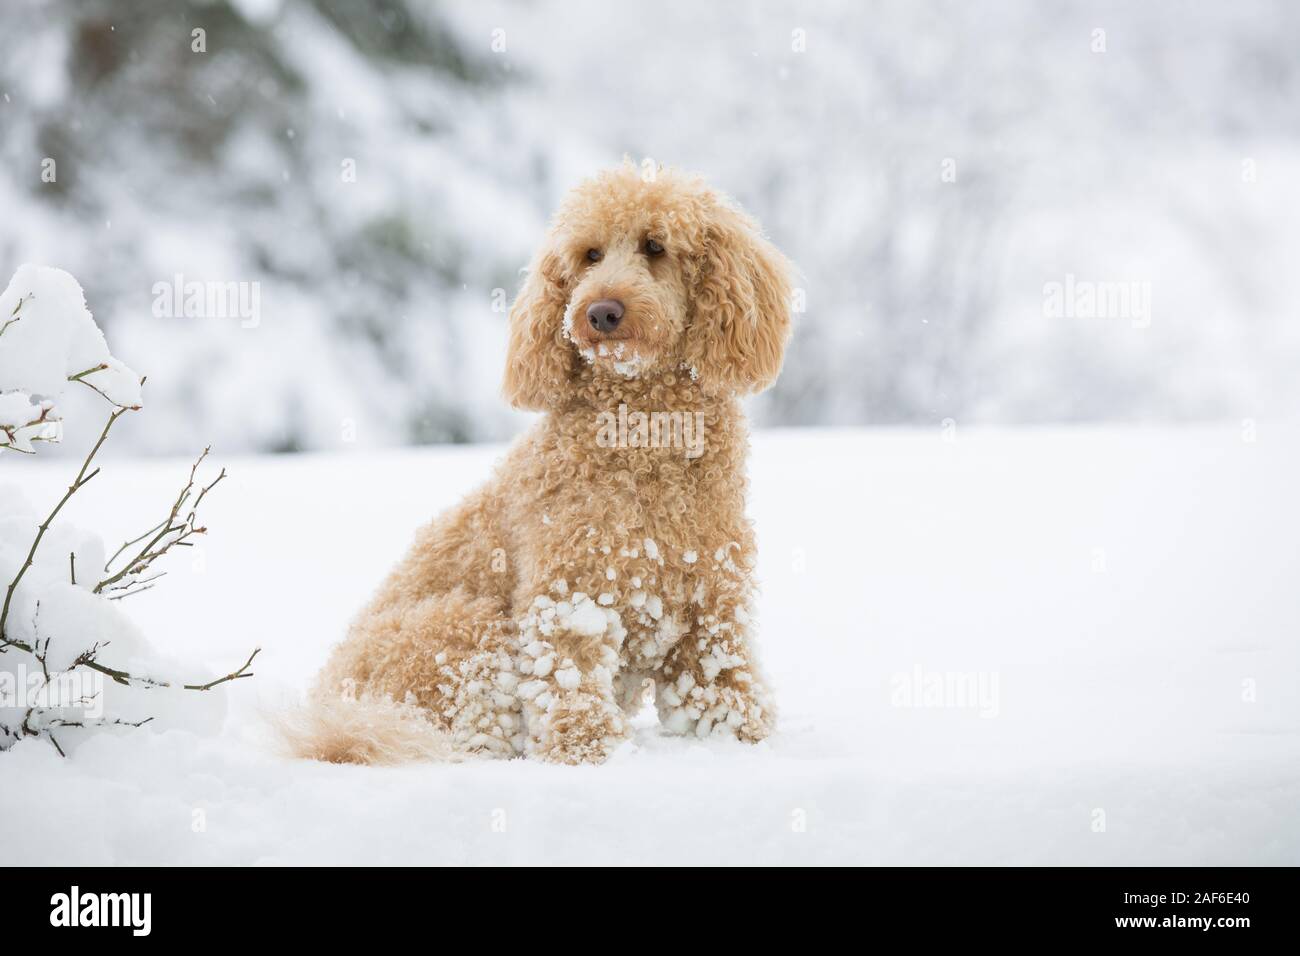 Giovani barboncino albicocca ponendo al di fuori nella neve. Ritratto di cute barboncino albicocca nel magnifico paesaggio invernale, Weissensee, Alpi austriache, Austria Foto Stock